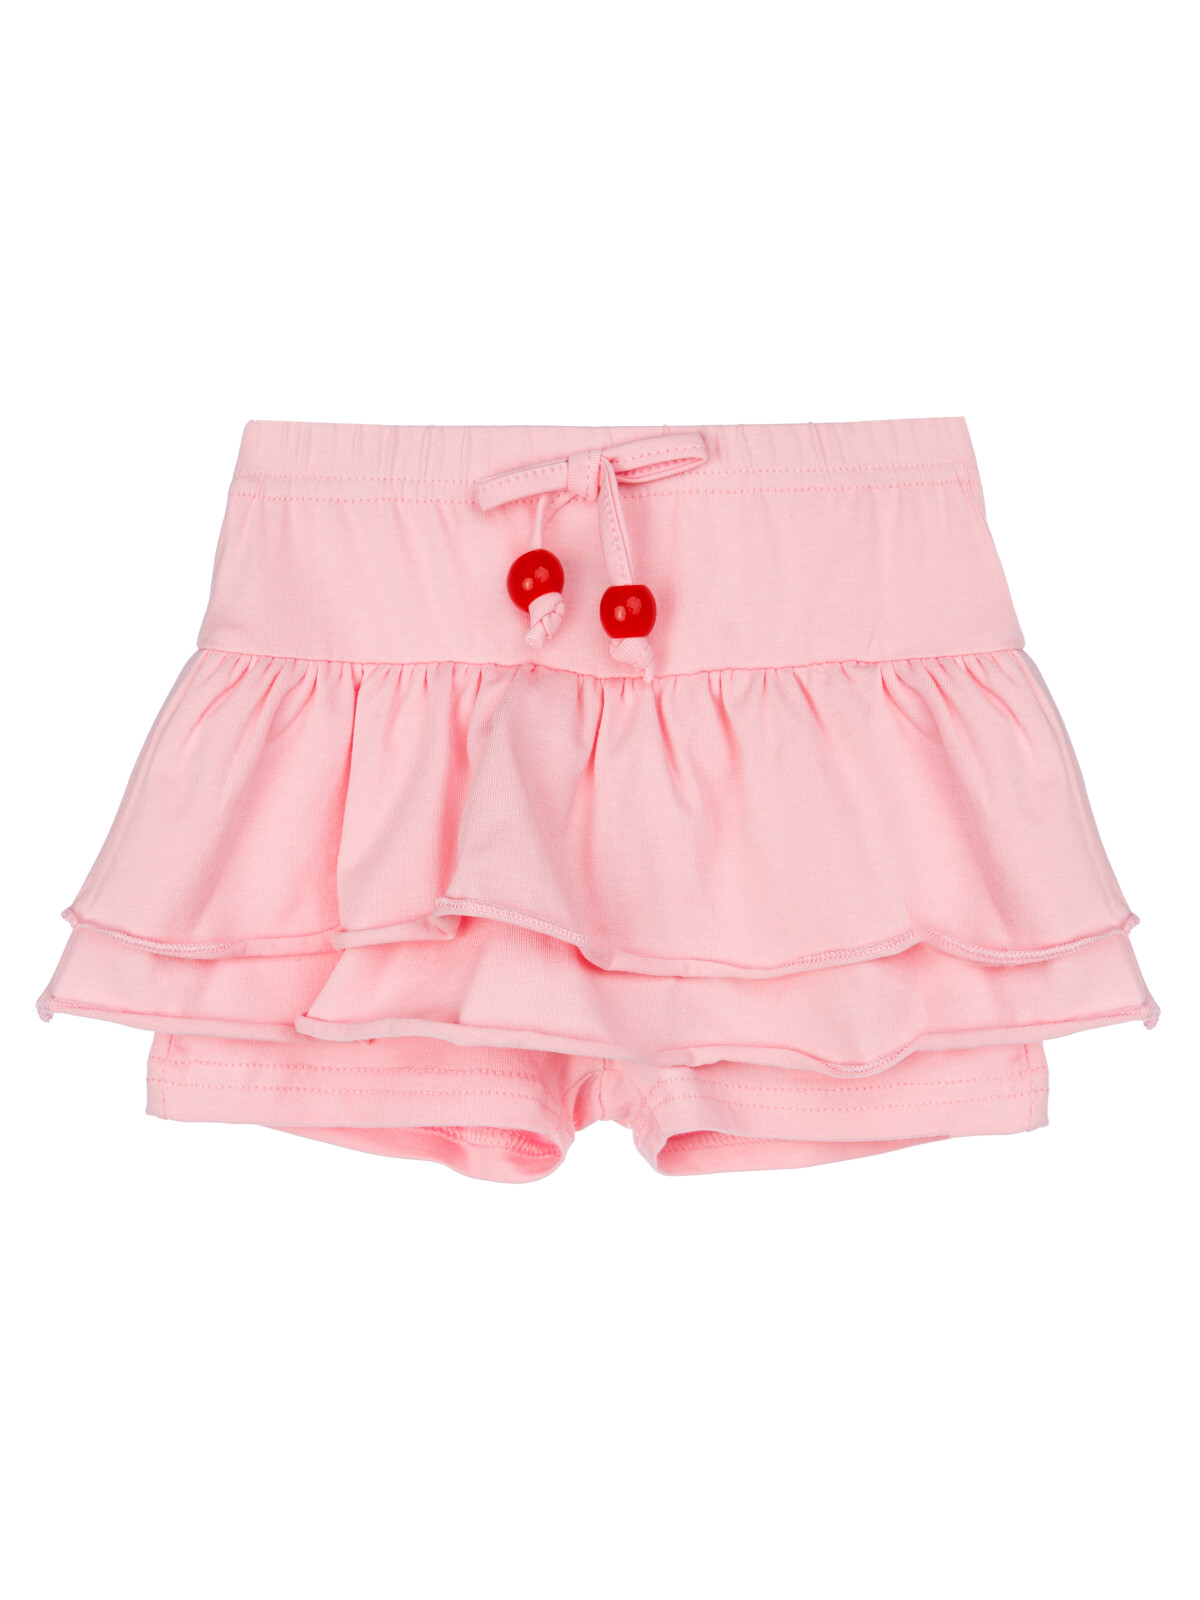 Юбка-шорты детская PlayToday 12429022, светло-розовый, 92 юбка женская мини из экокожи в светло коричневом оттенке